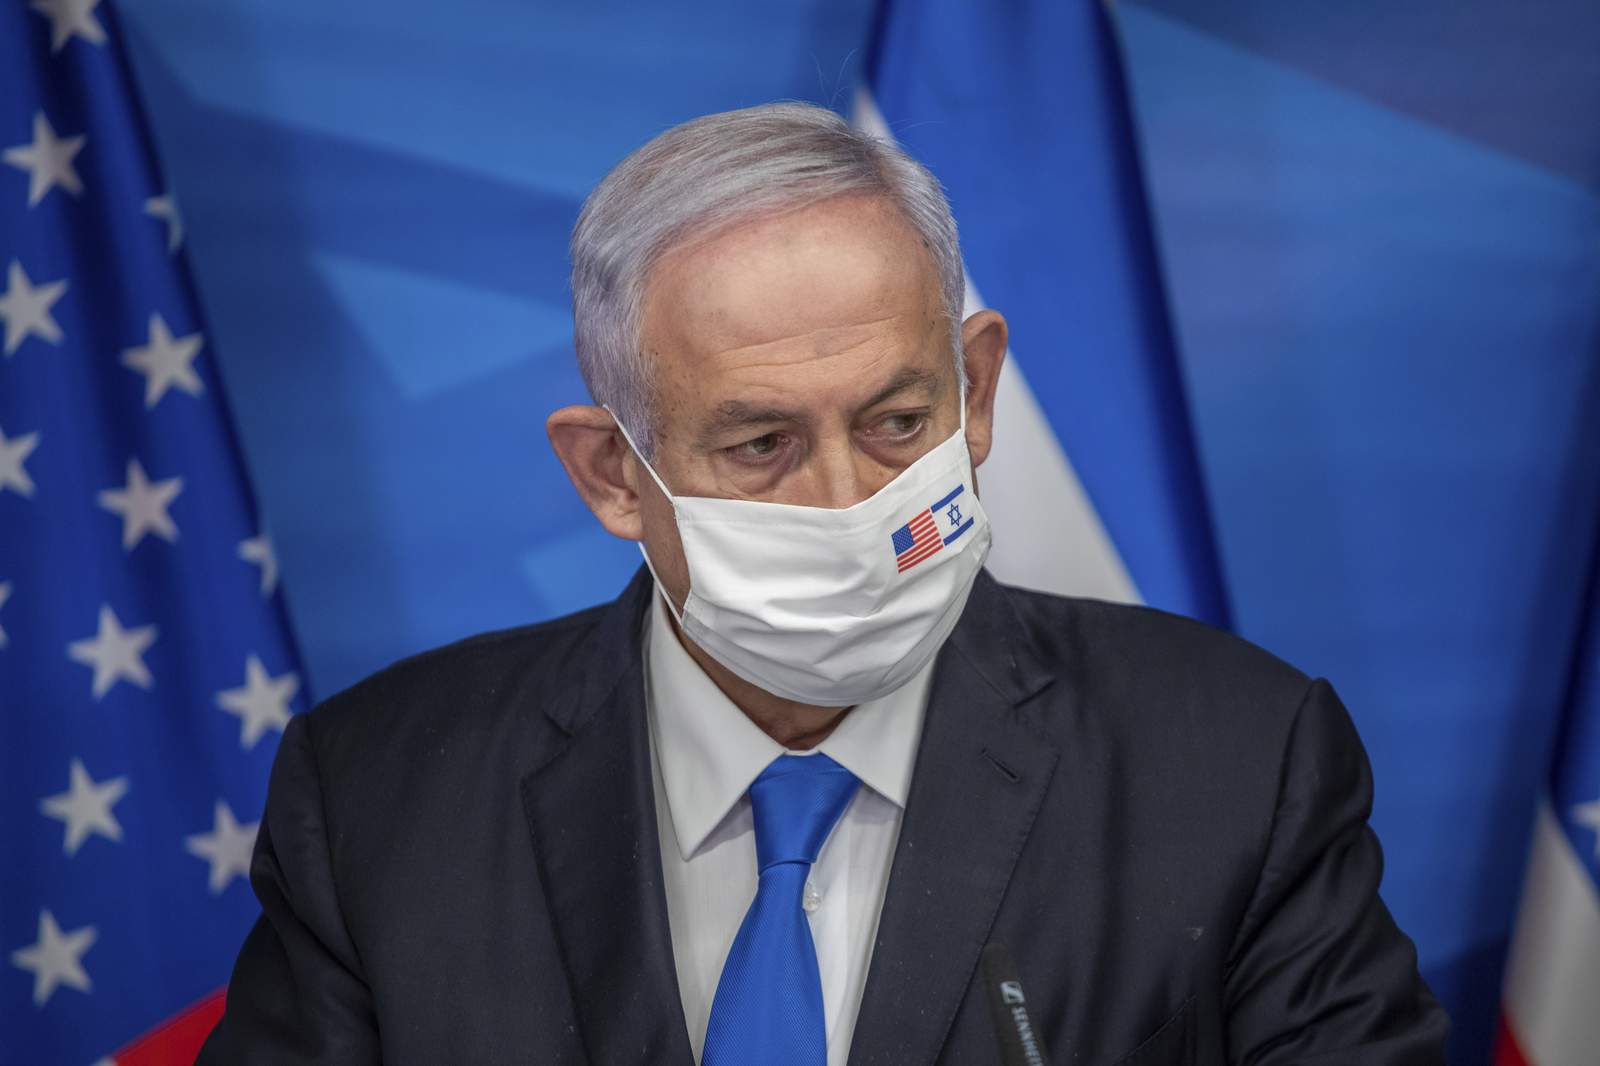 Israel postpones Netanyahu's trial amid virus lockdown